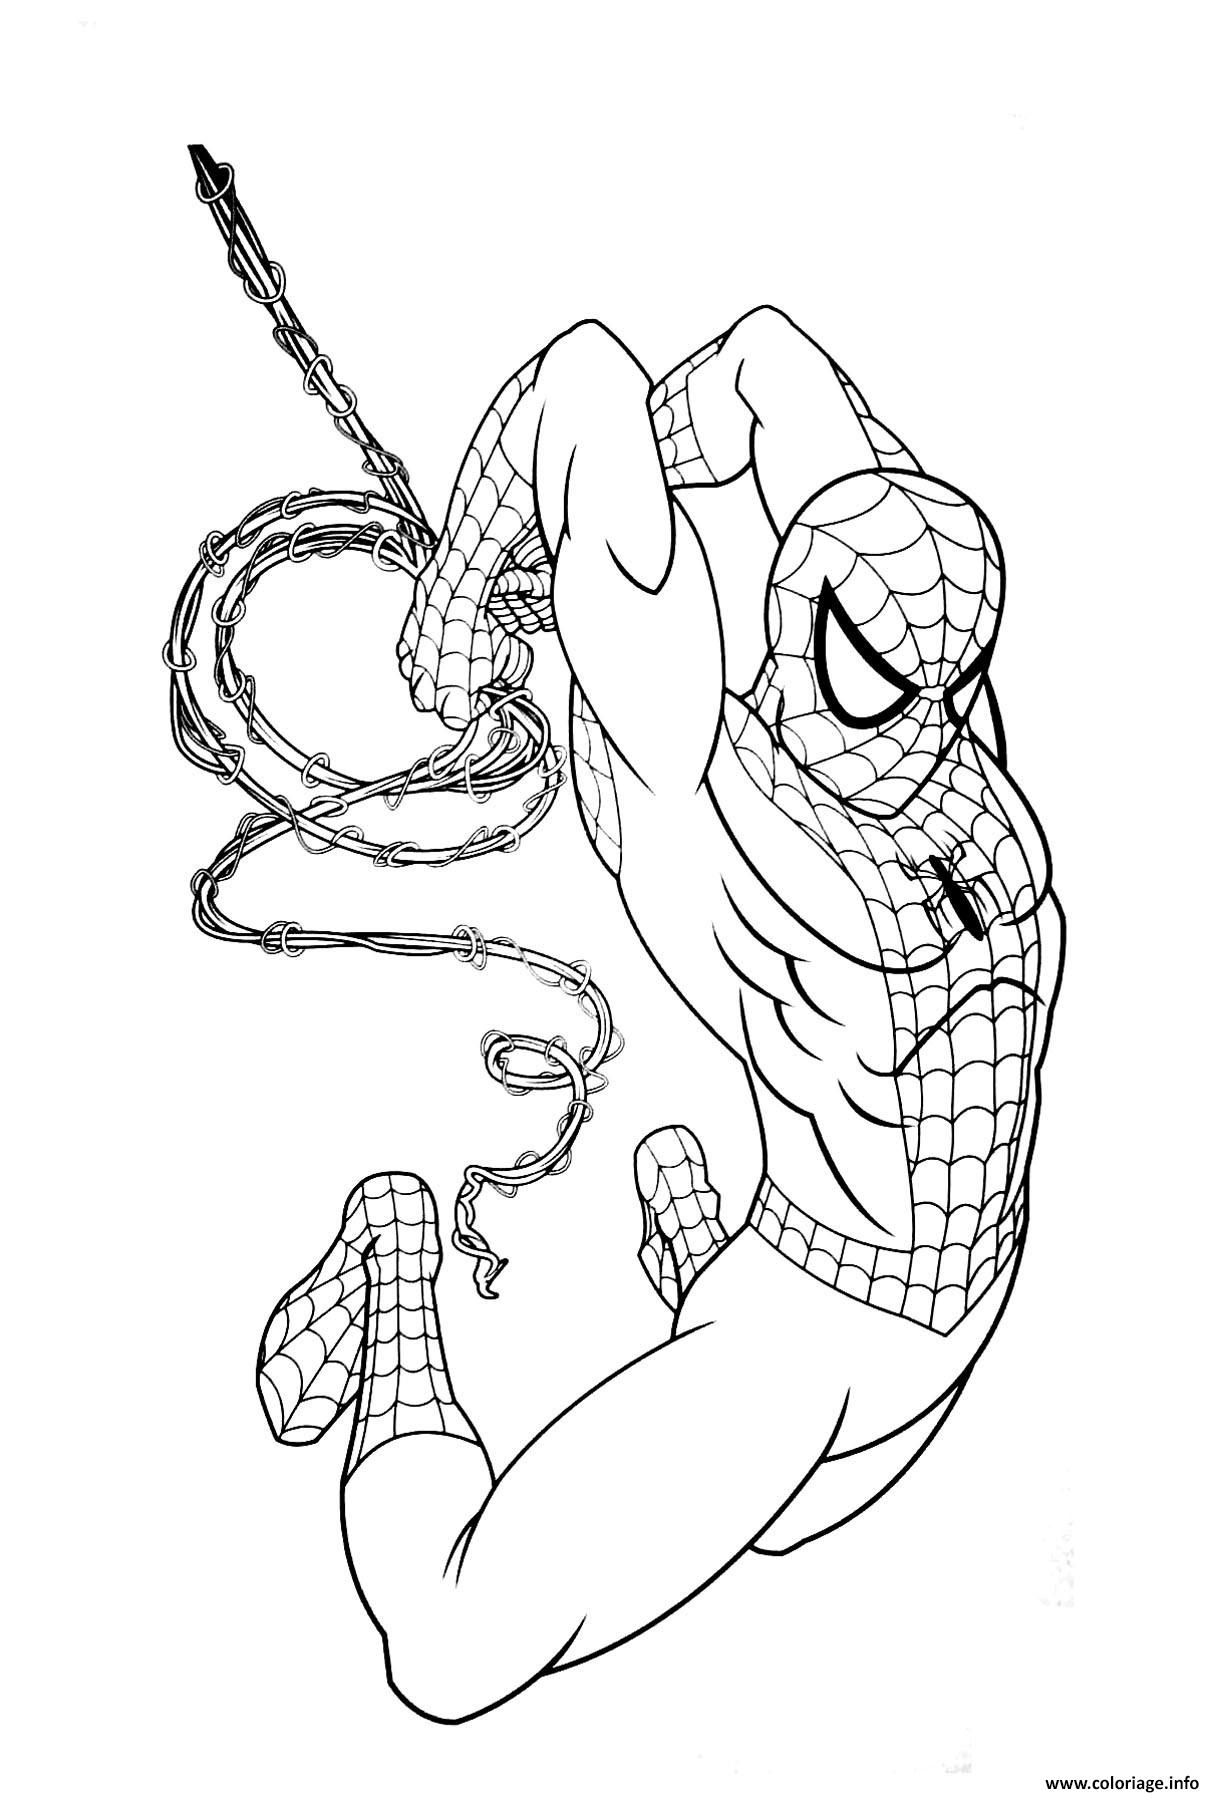 Coloriage avengers endgame spiderman - JeColorie.com